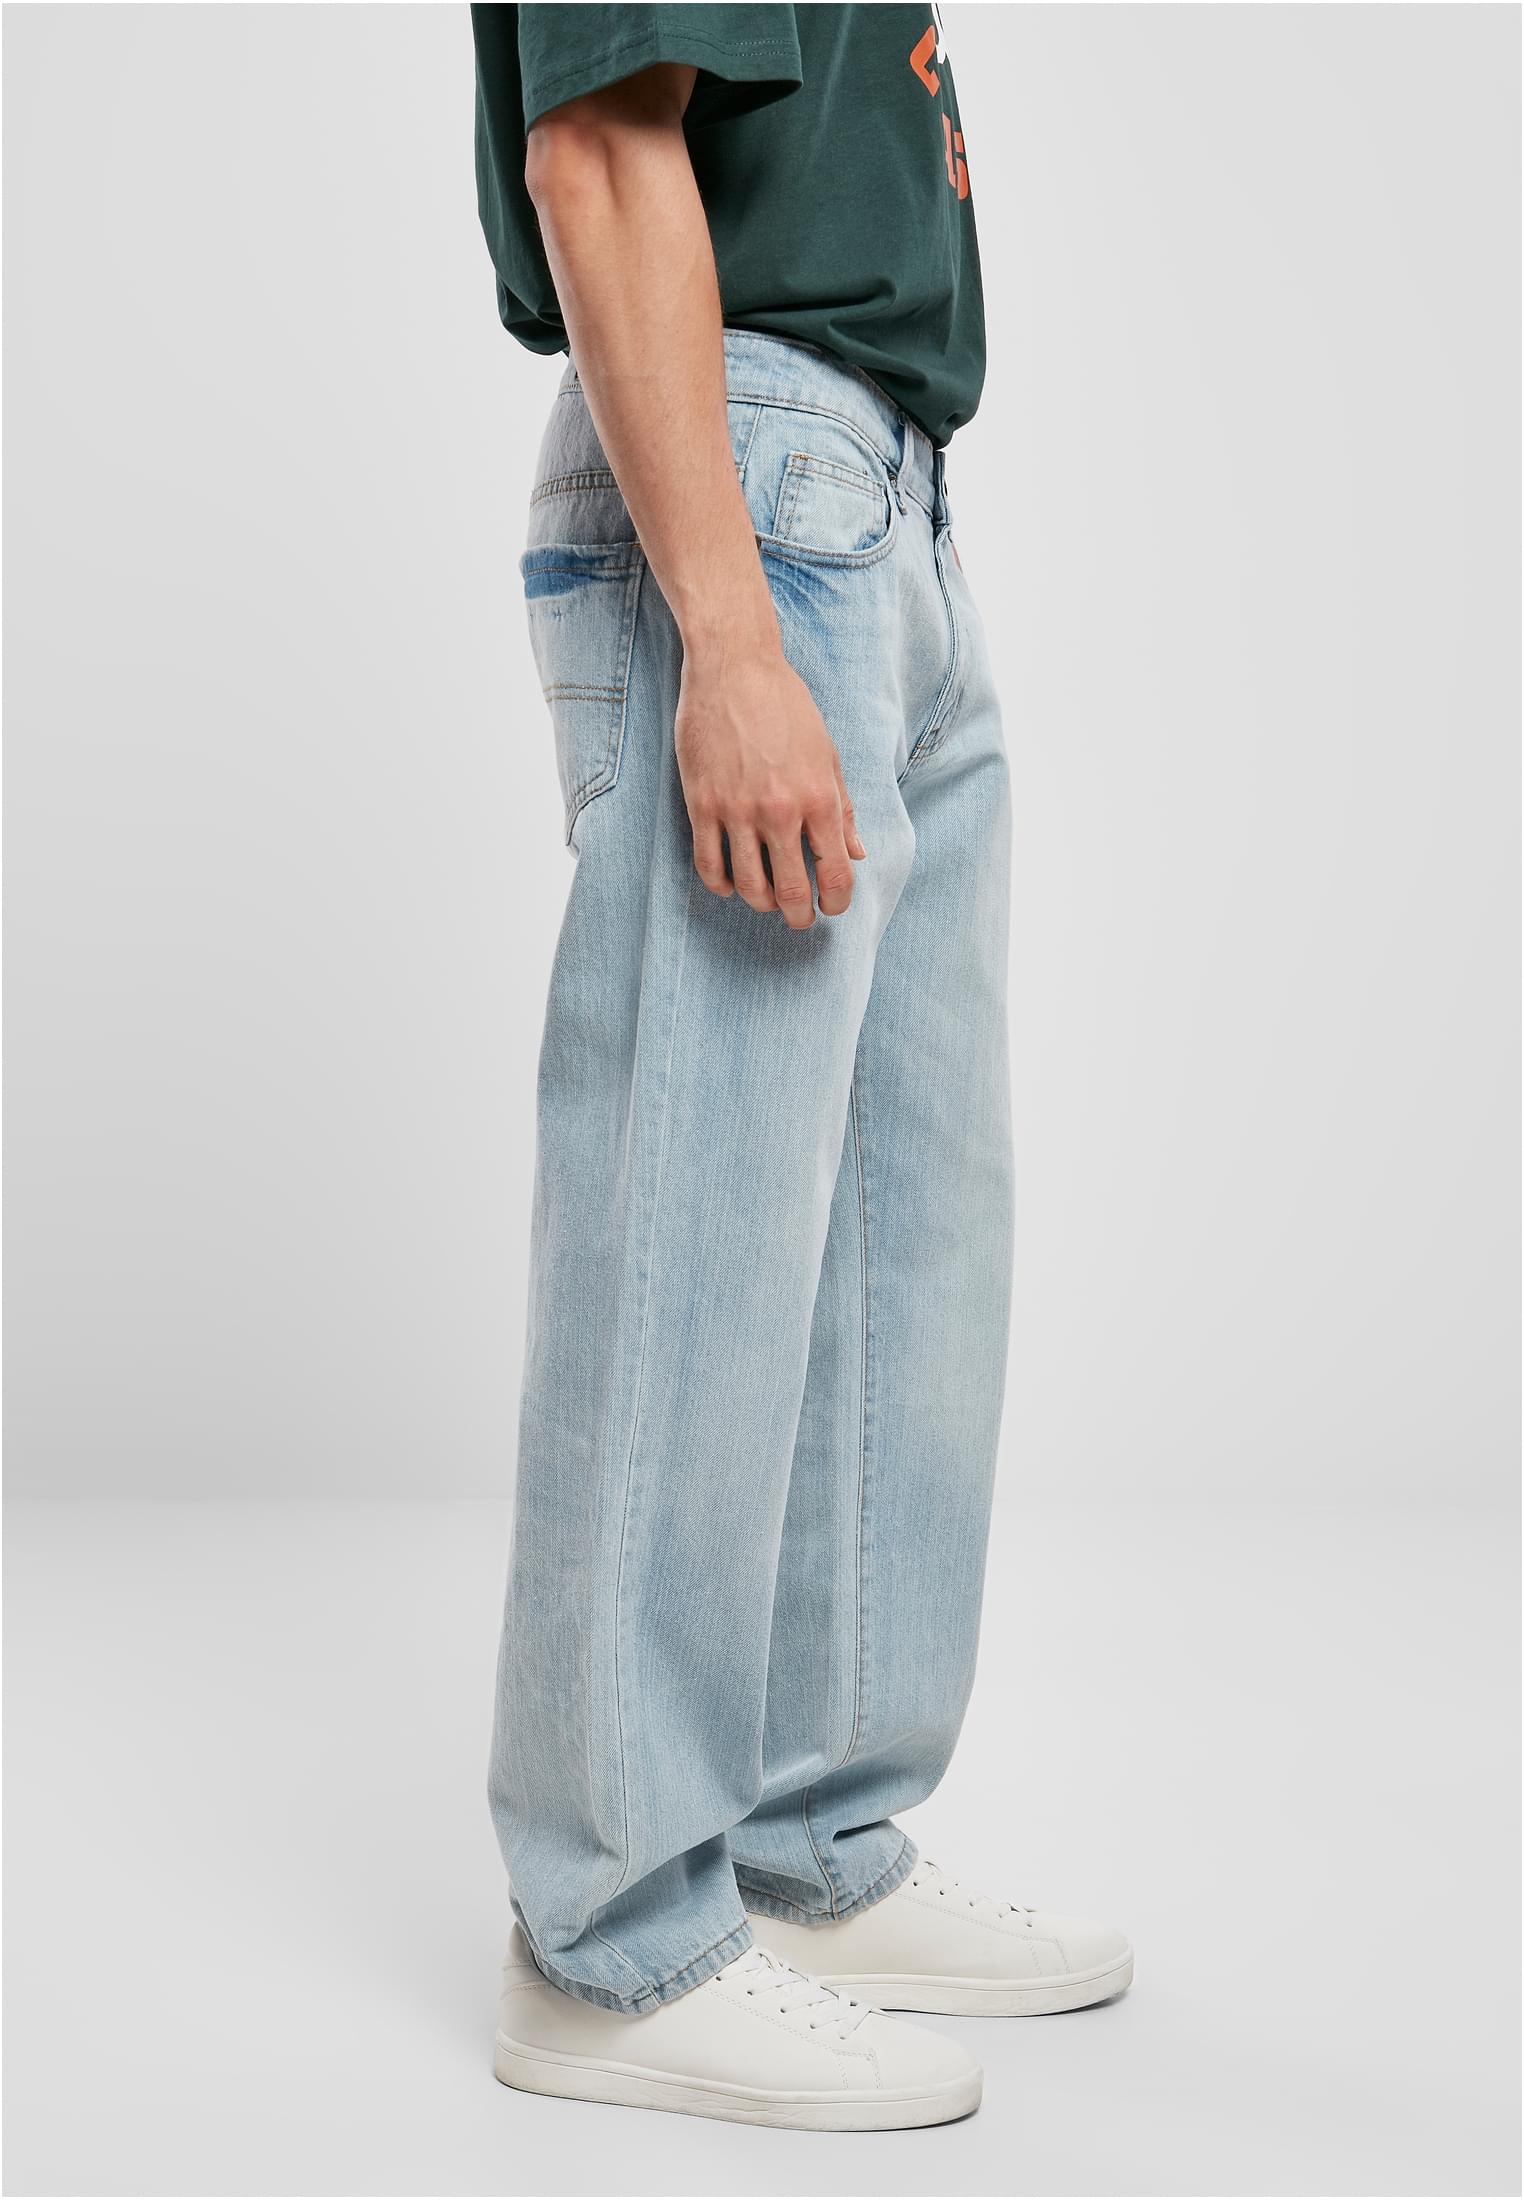 Urban Classics Loose Fit Jeans Pantalones para Hombre